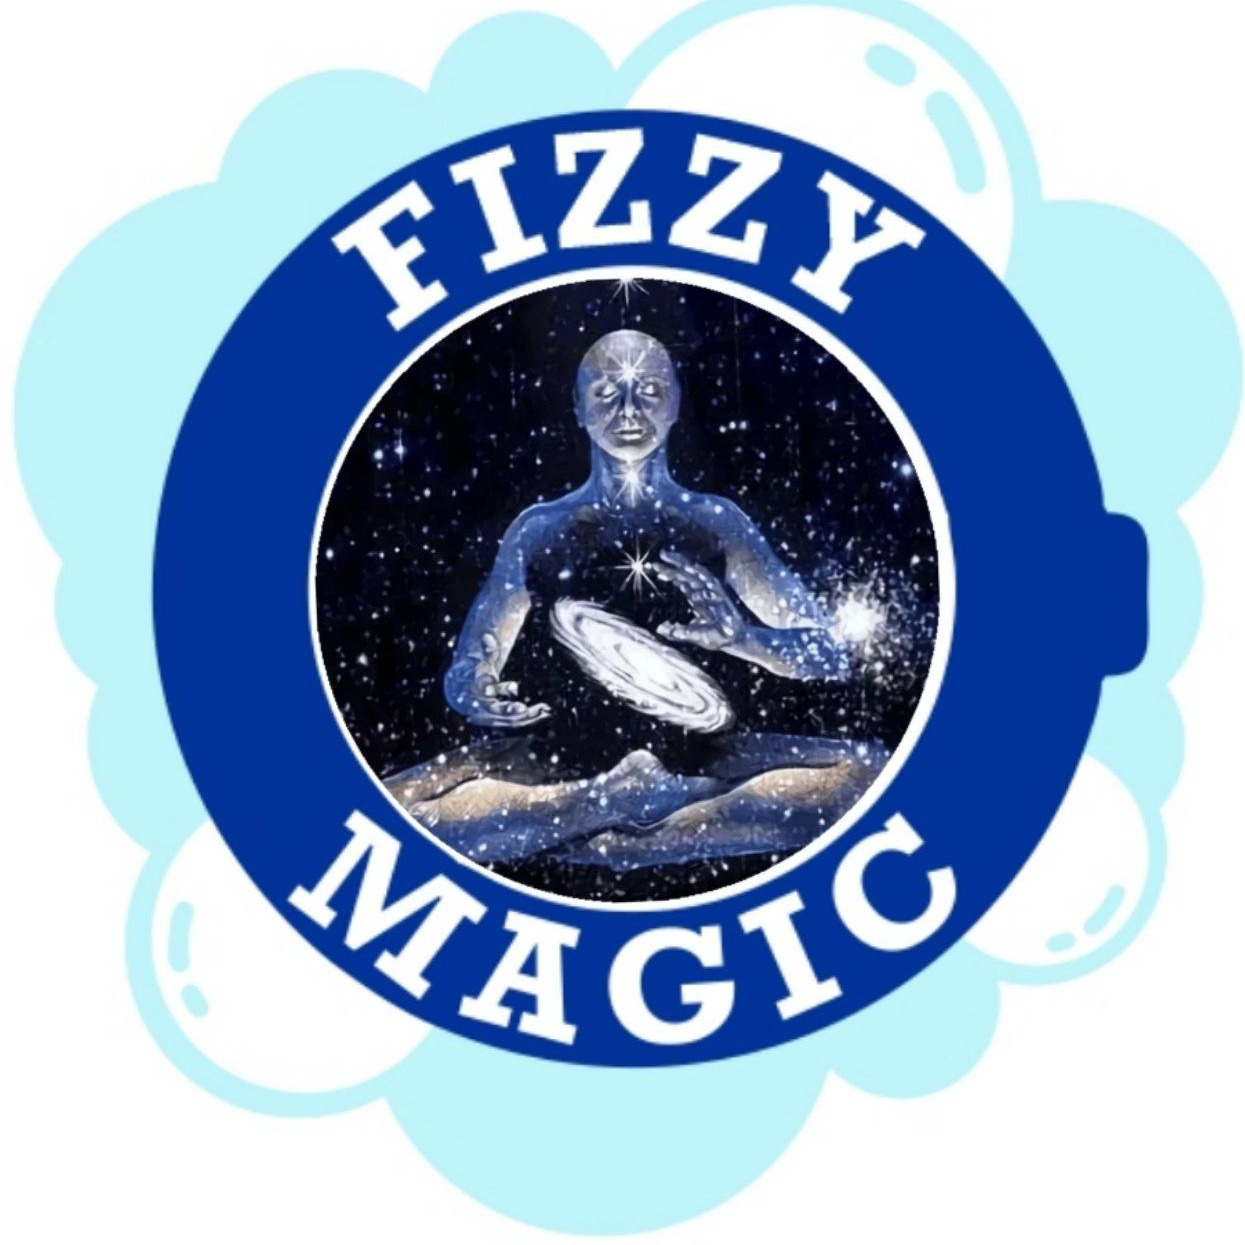 Fizzy magic